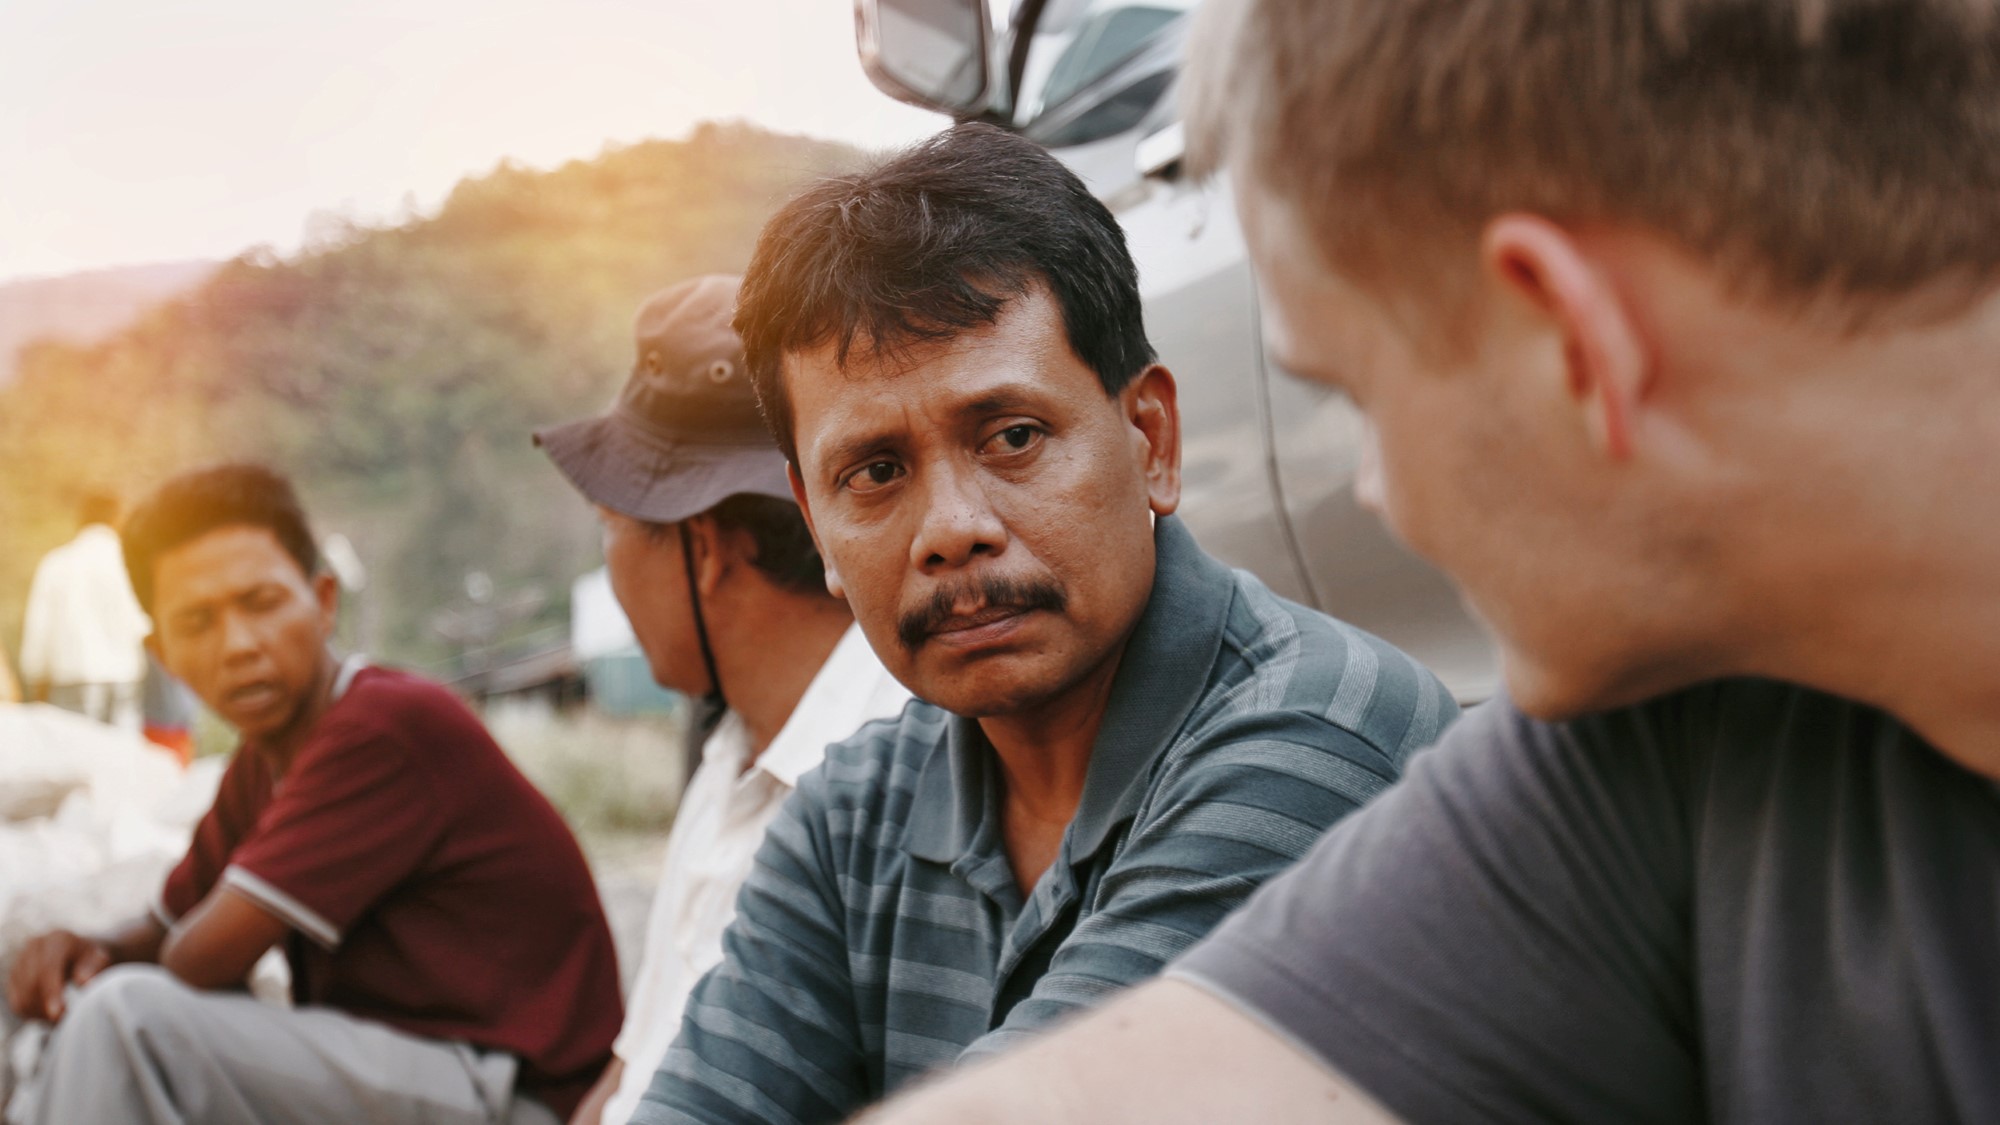 Misjonær og indonesisk mann samtaler